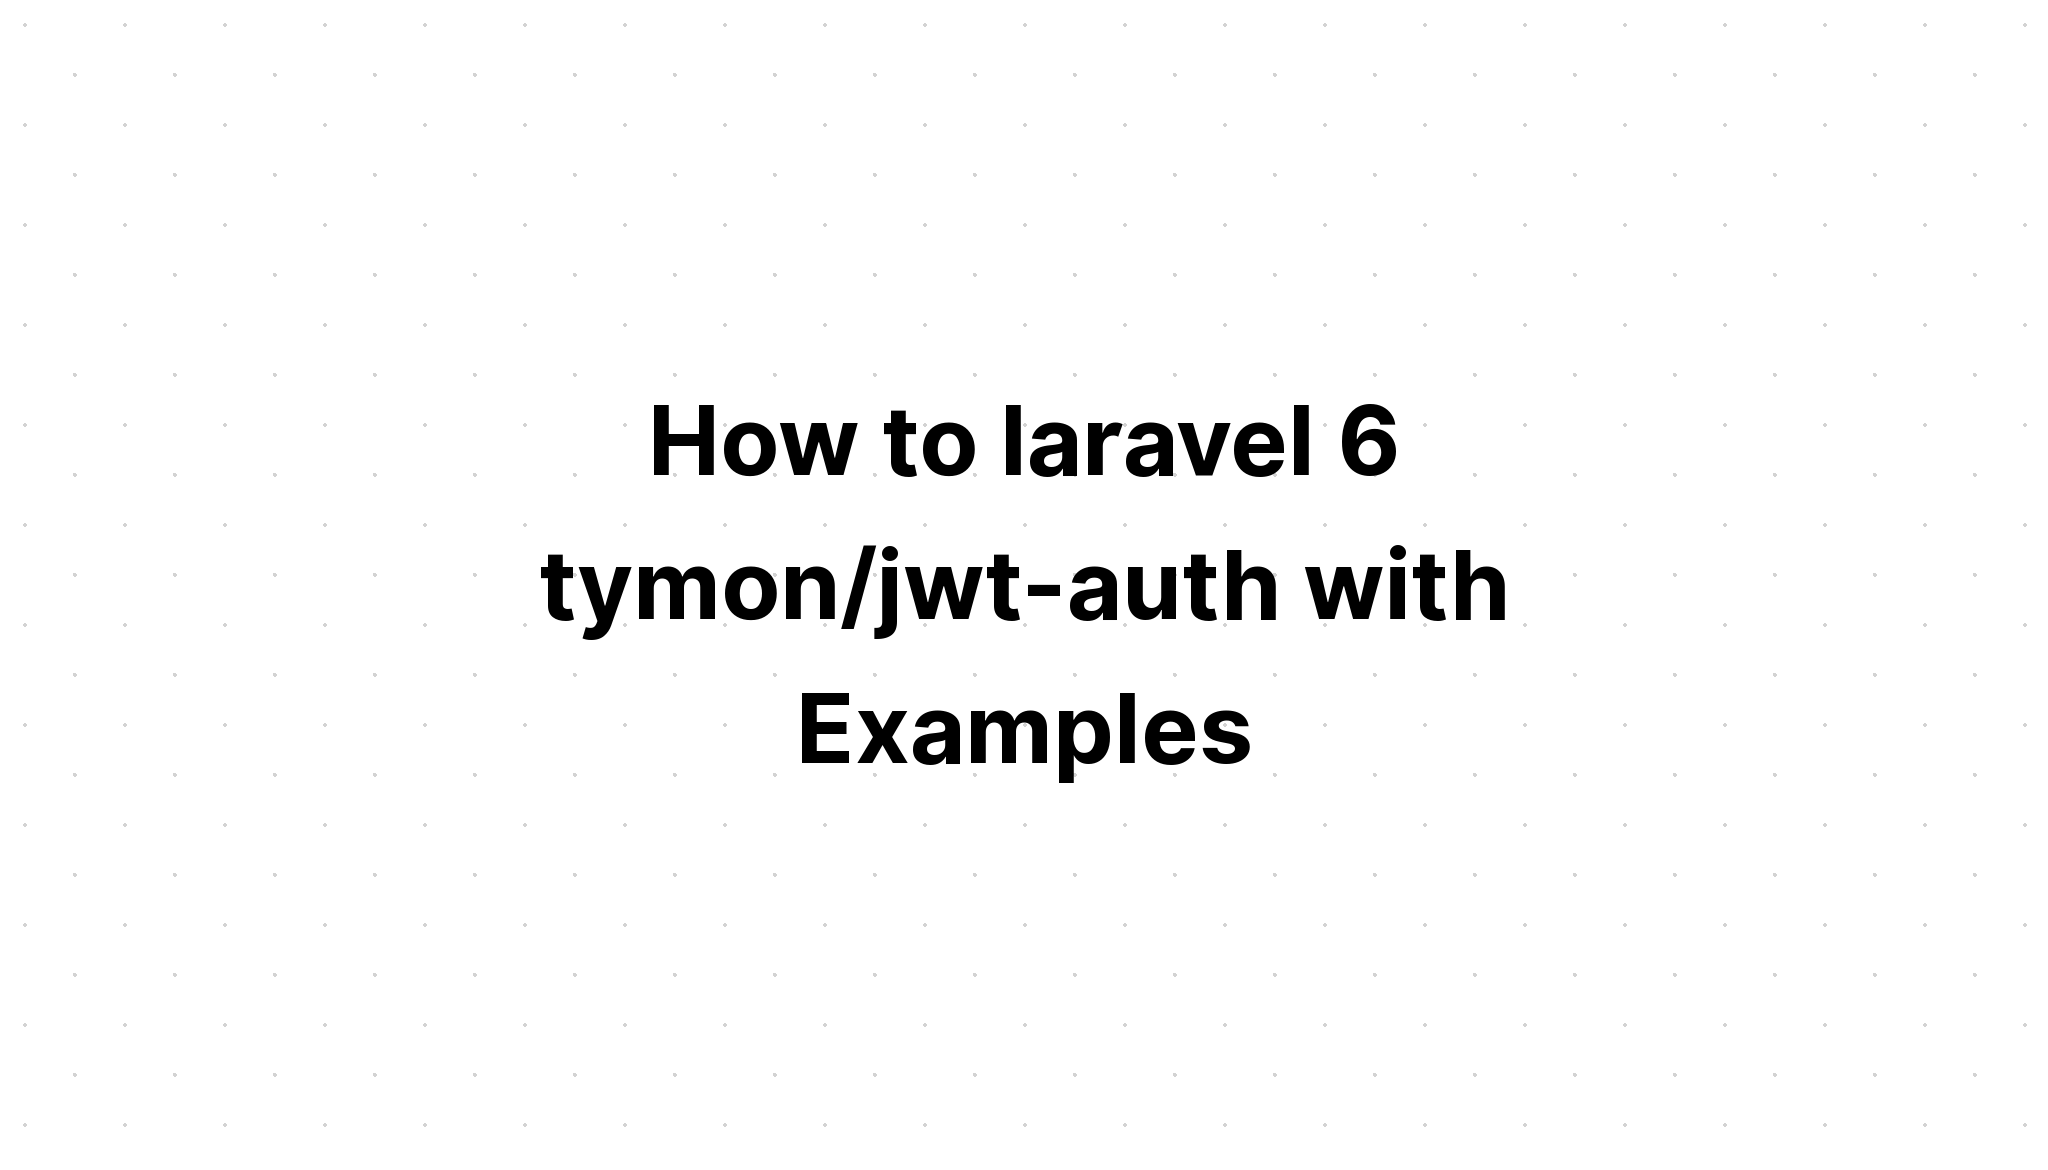 Cách sử dụng laravel 6 tymon/jwt-auth với các ví dụ